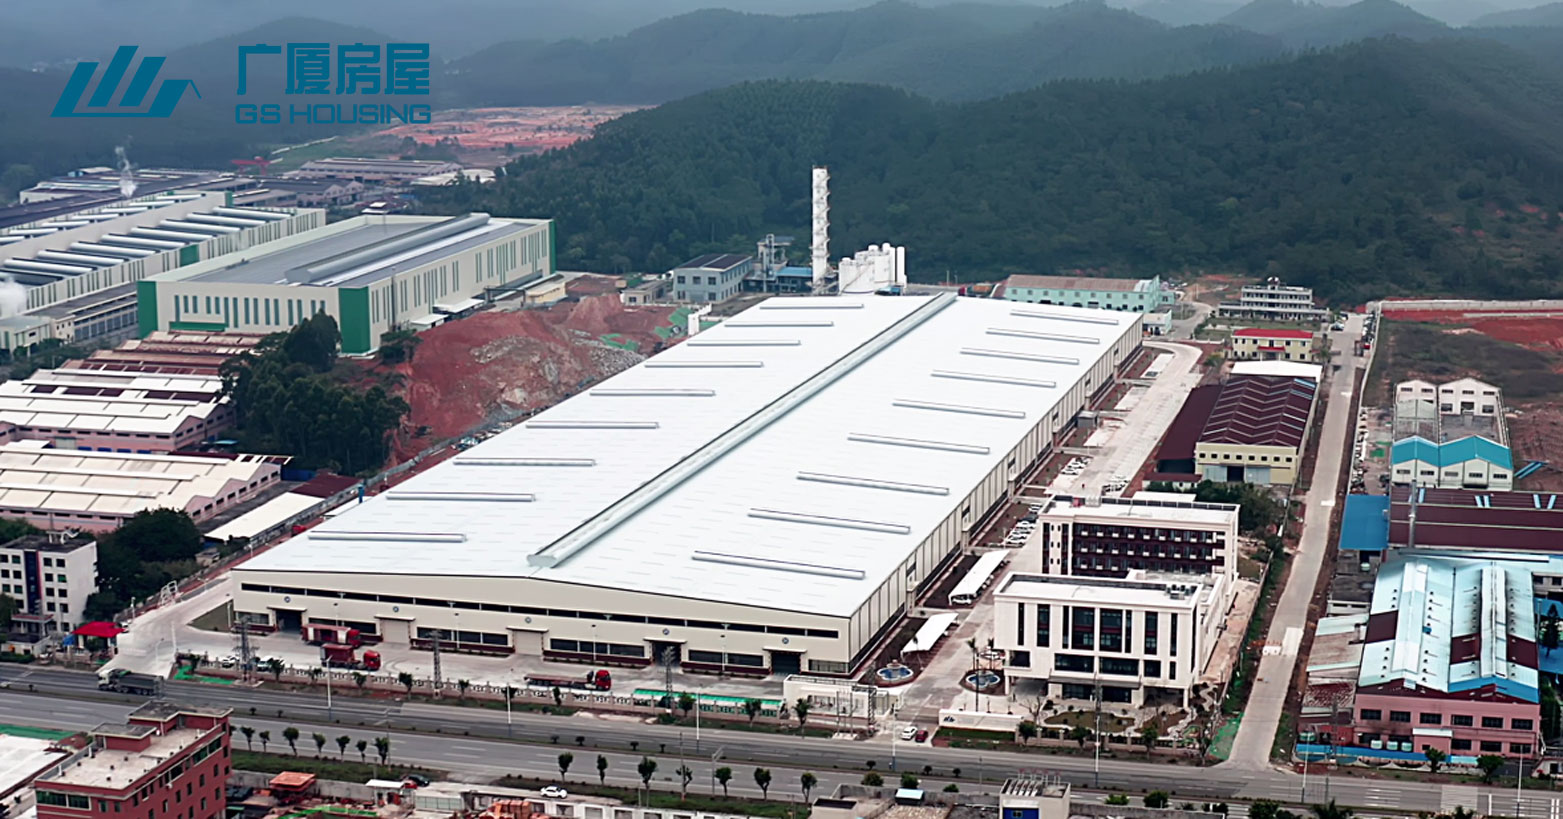 GS Housing - Guangdong produktionsbas i södra Kina (mer än 100 set containerhus kan färdigställas på en dag)